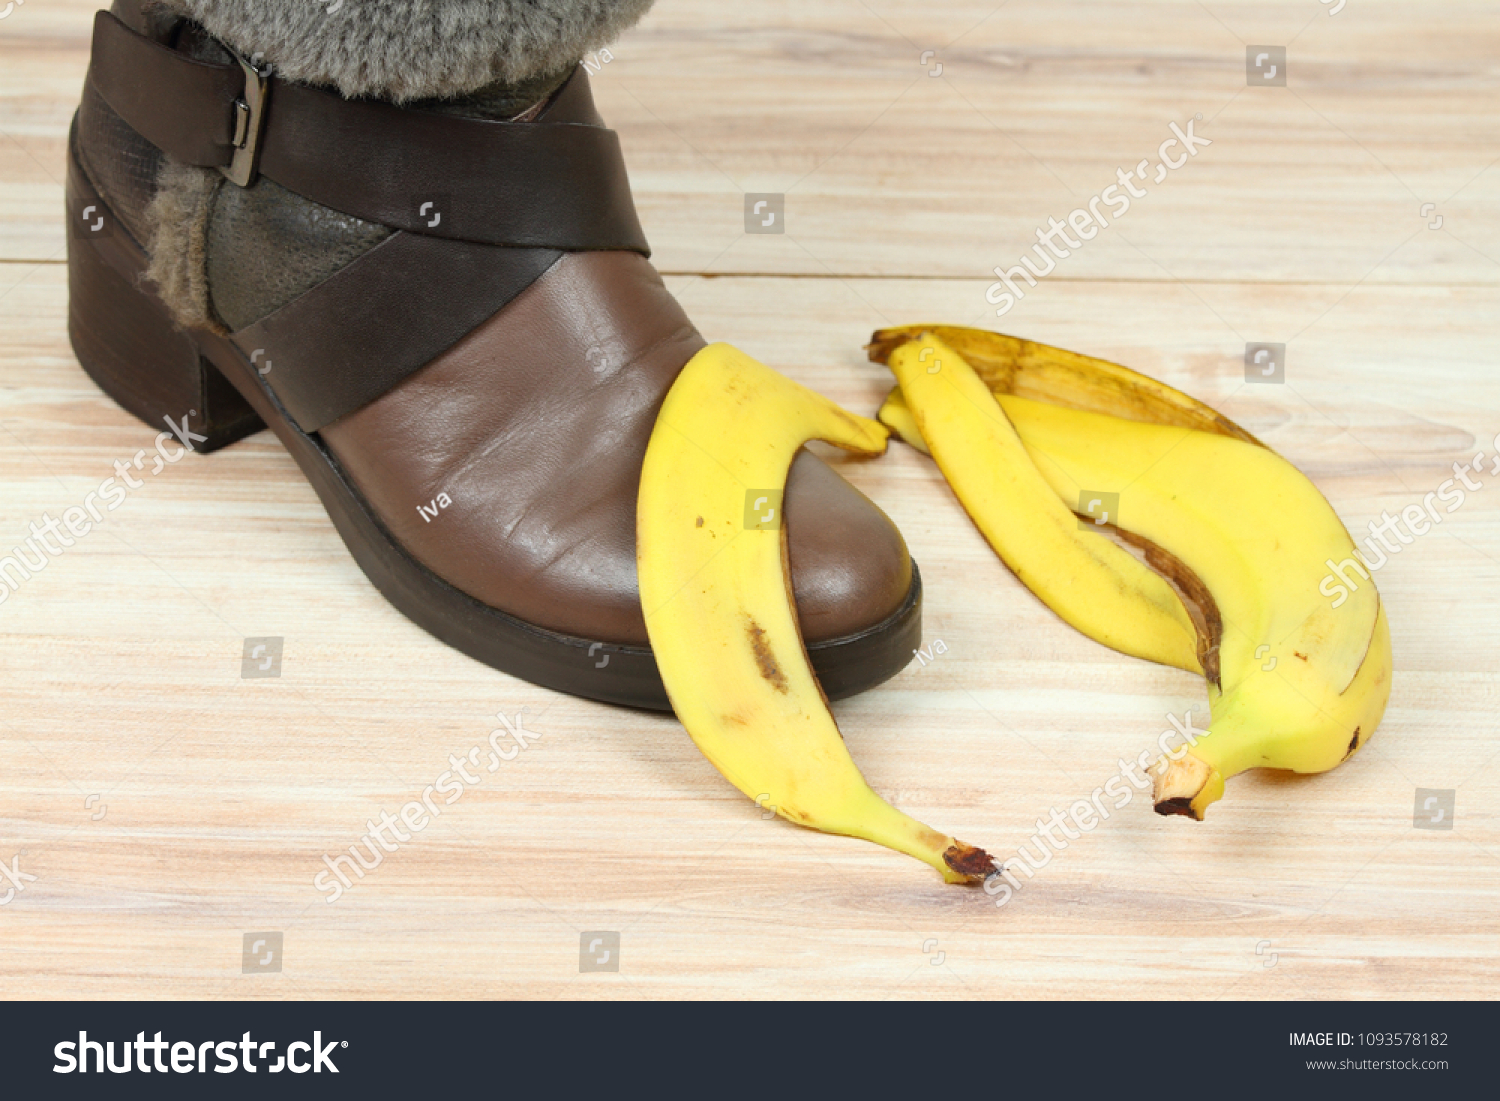 609 Banana Peel Shoe Images, Stock Photos & Vectors | Shutterstock